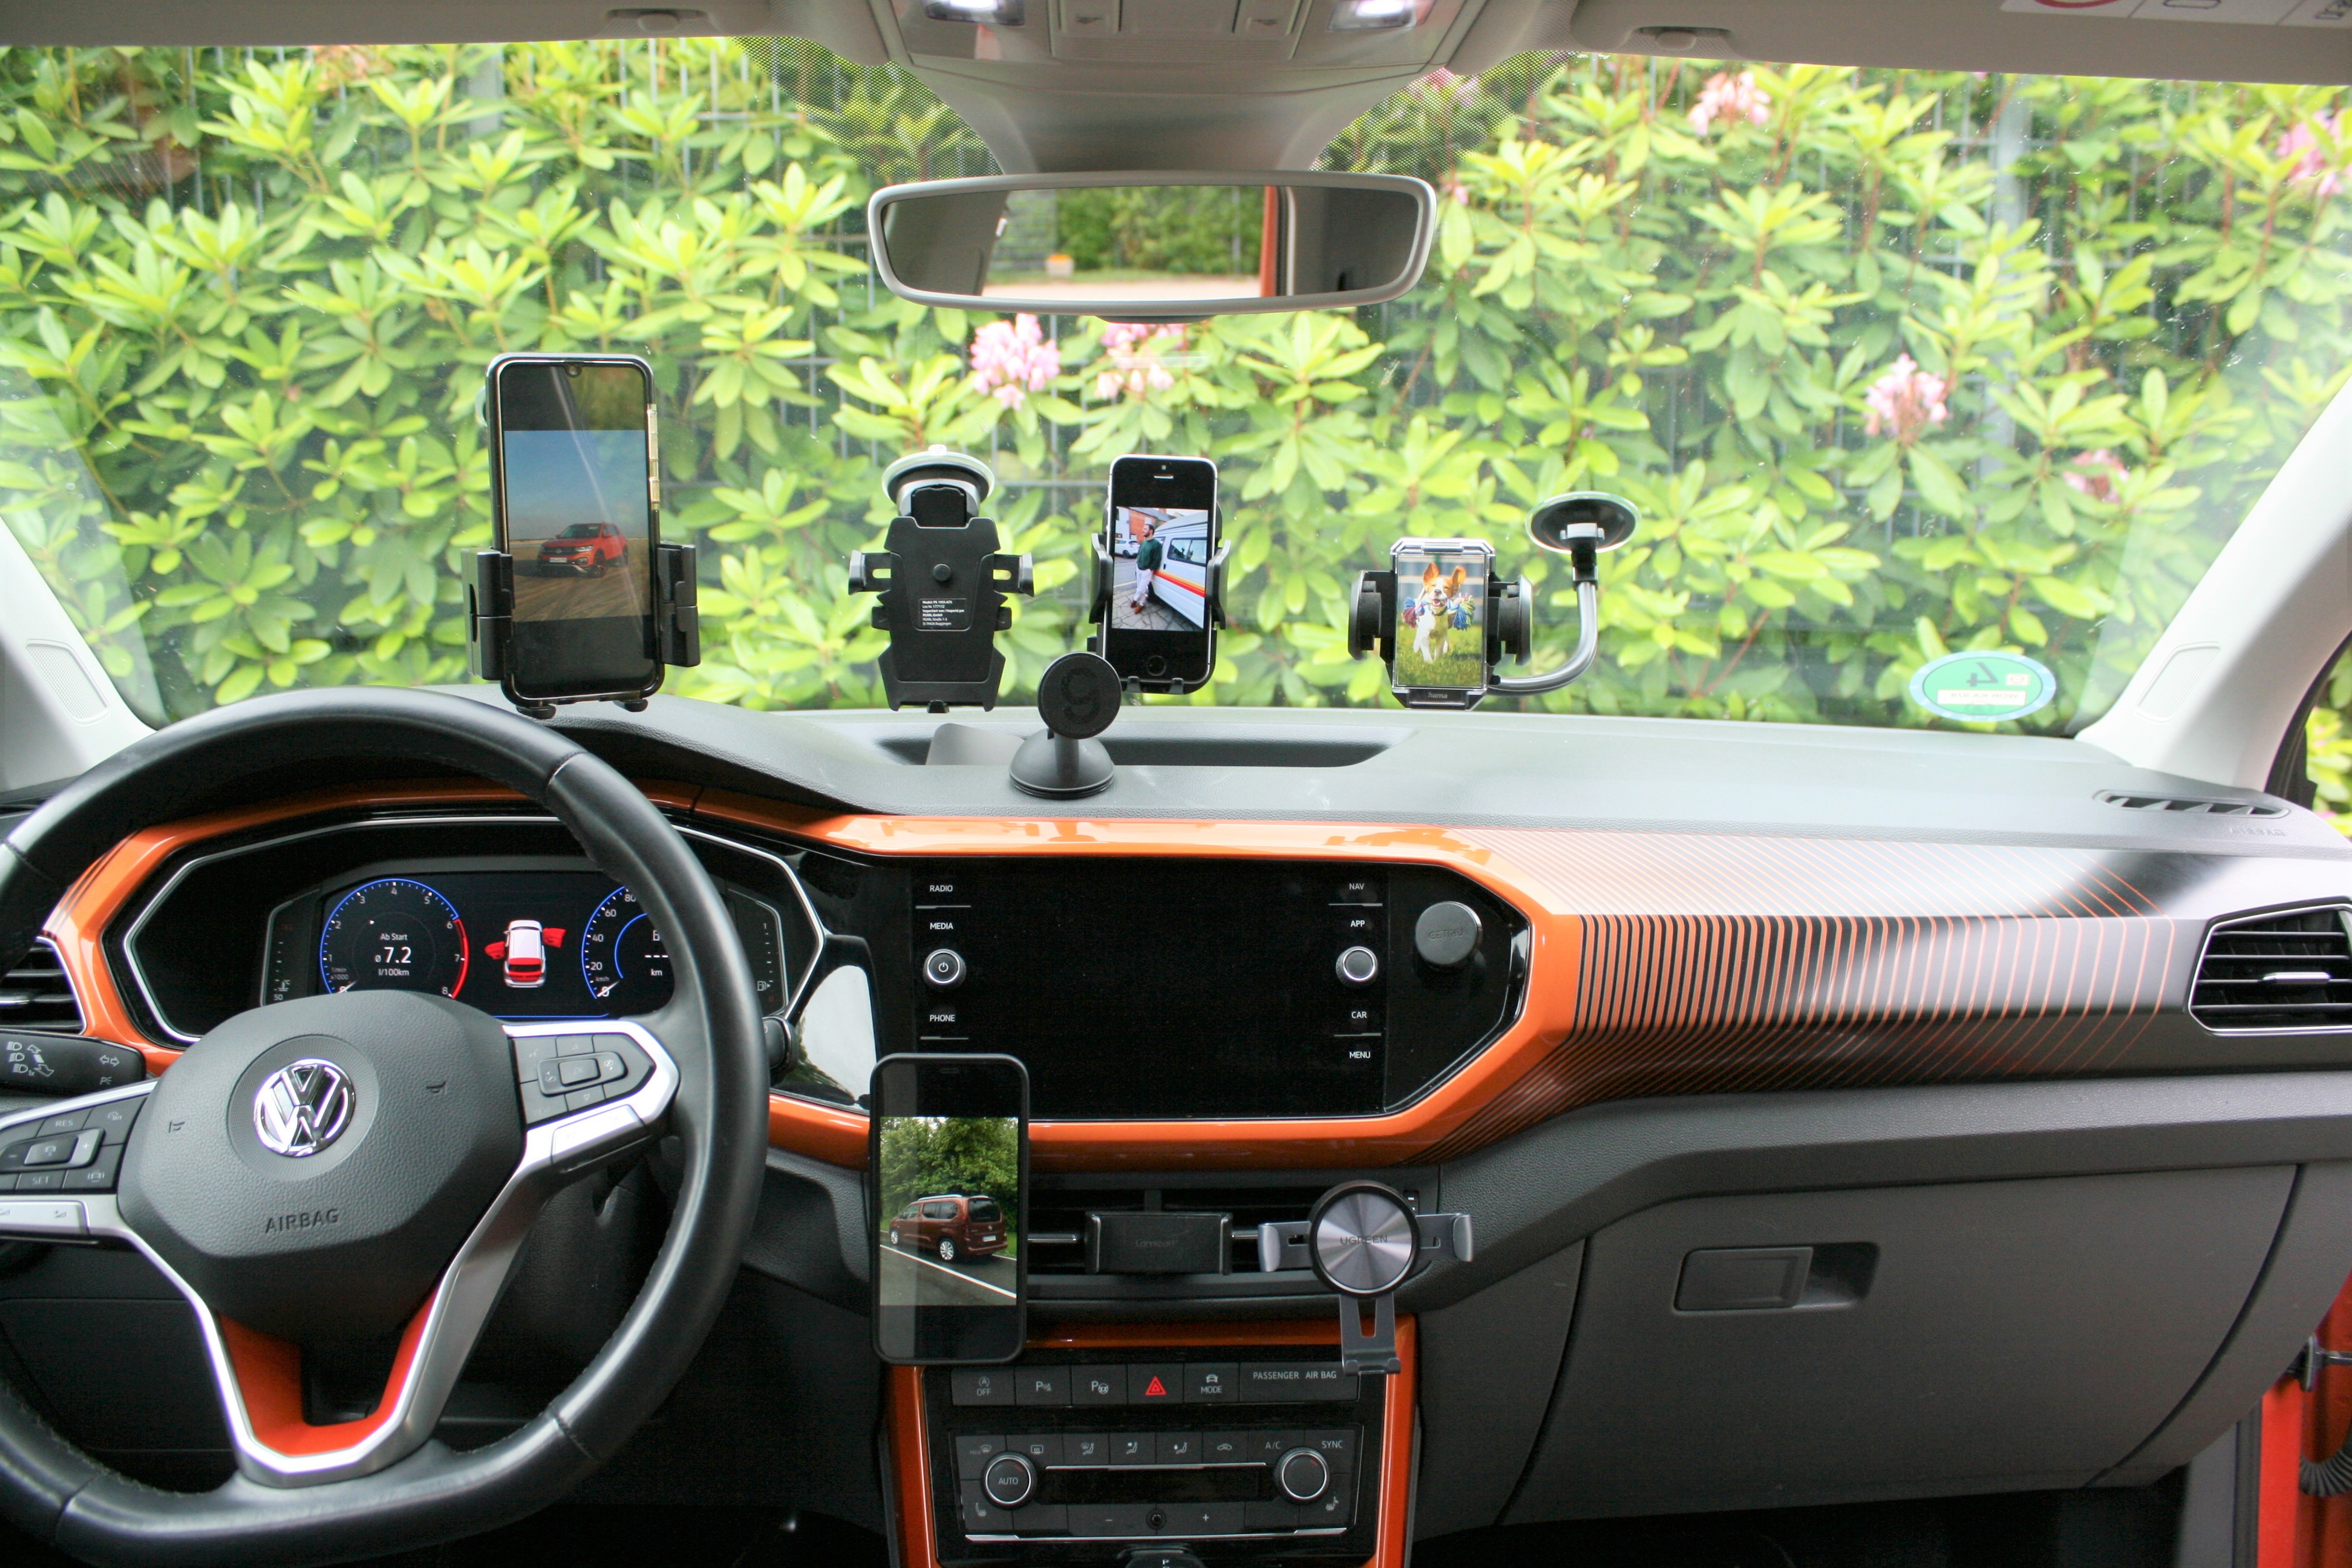 Handyhalterung für das Auto: Wireless Charger mit Magsafe & Qi ab 20 Euro